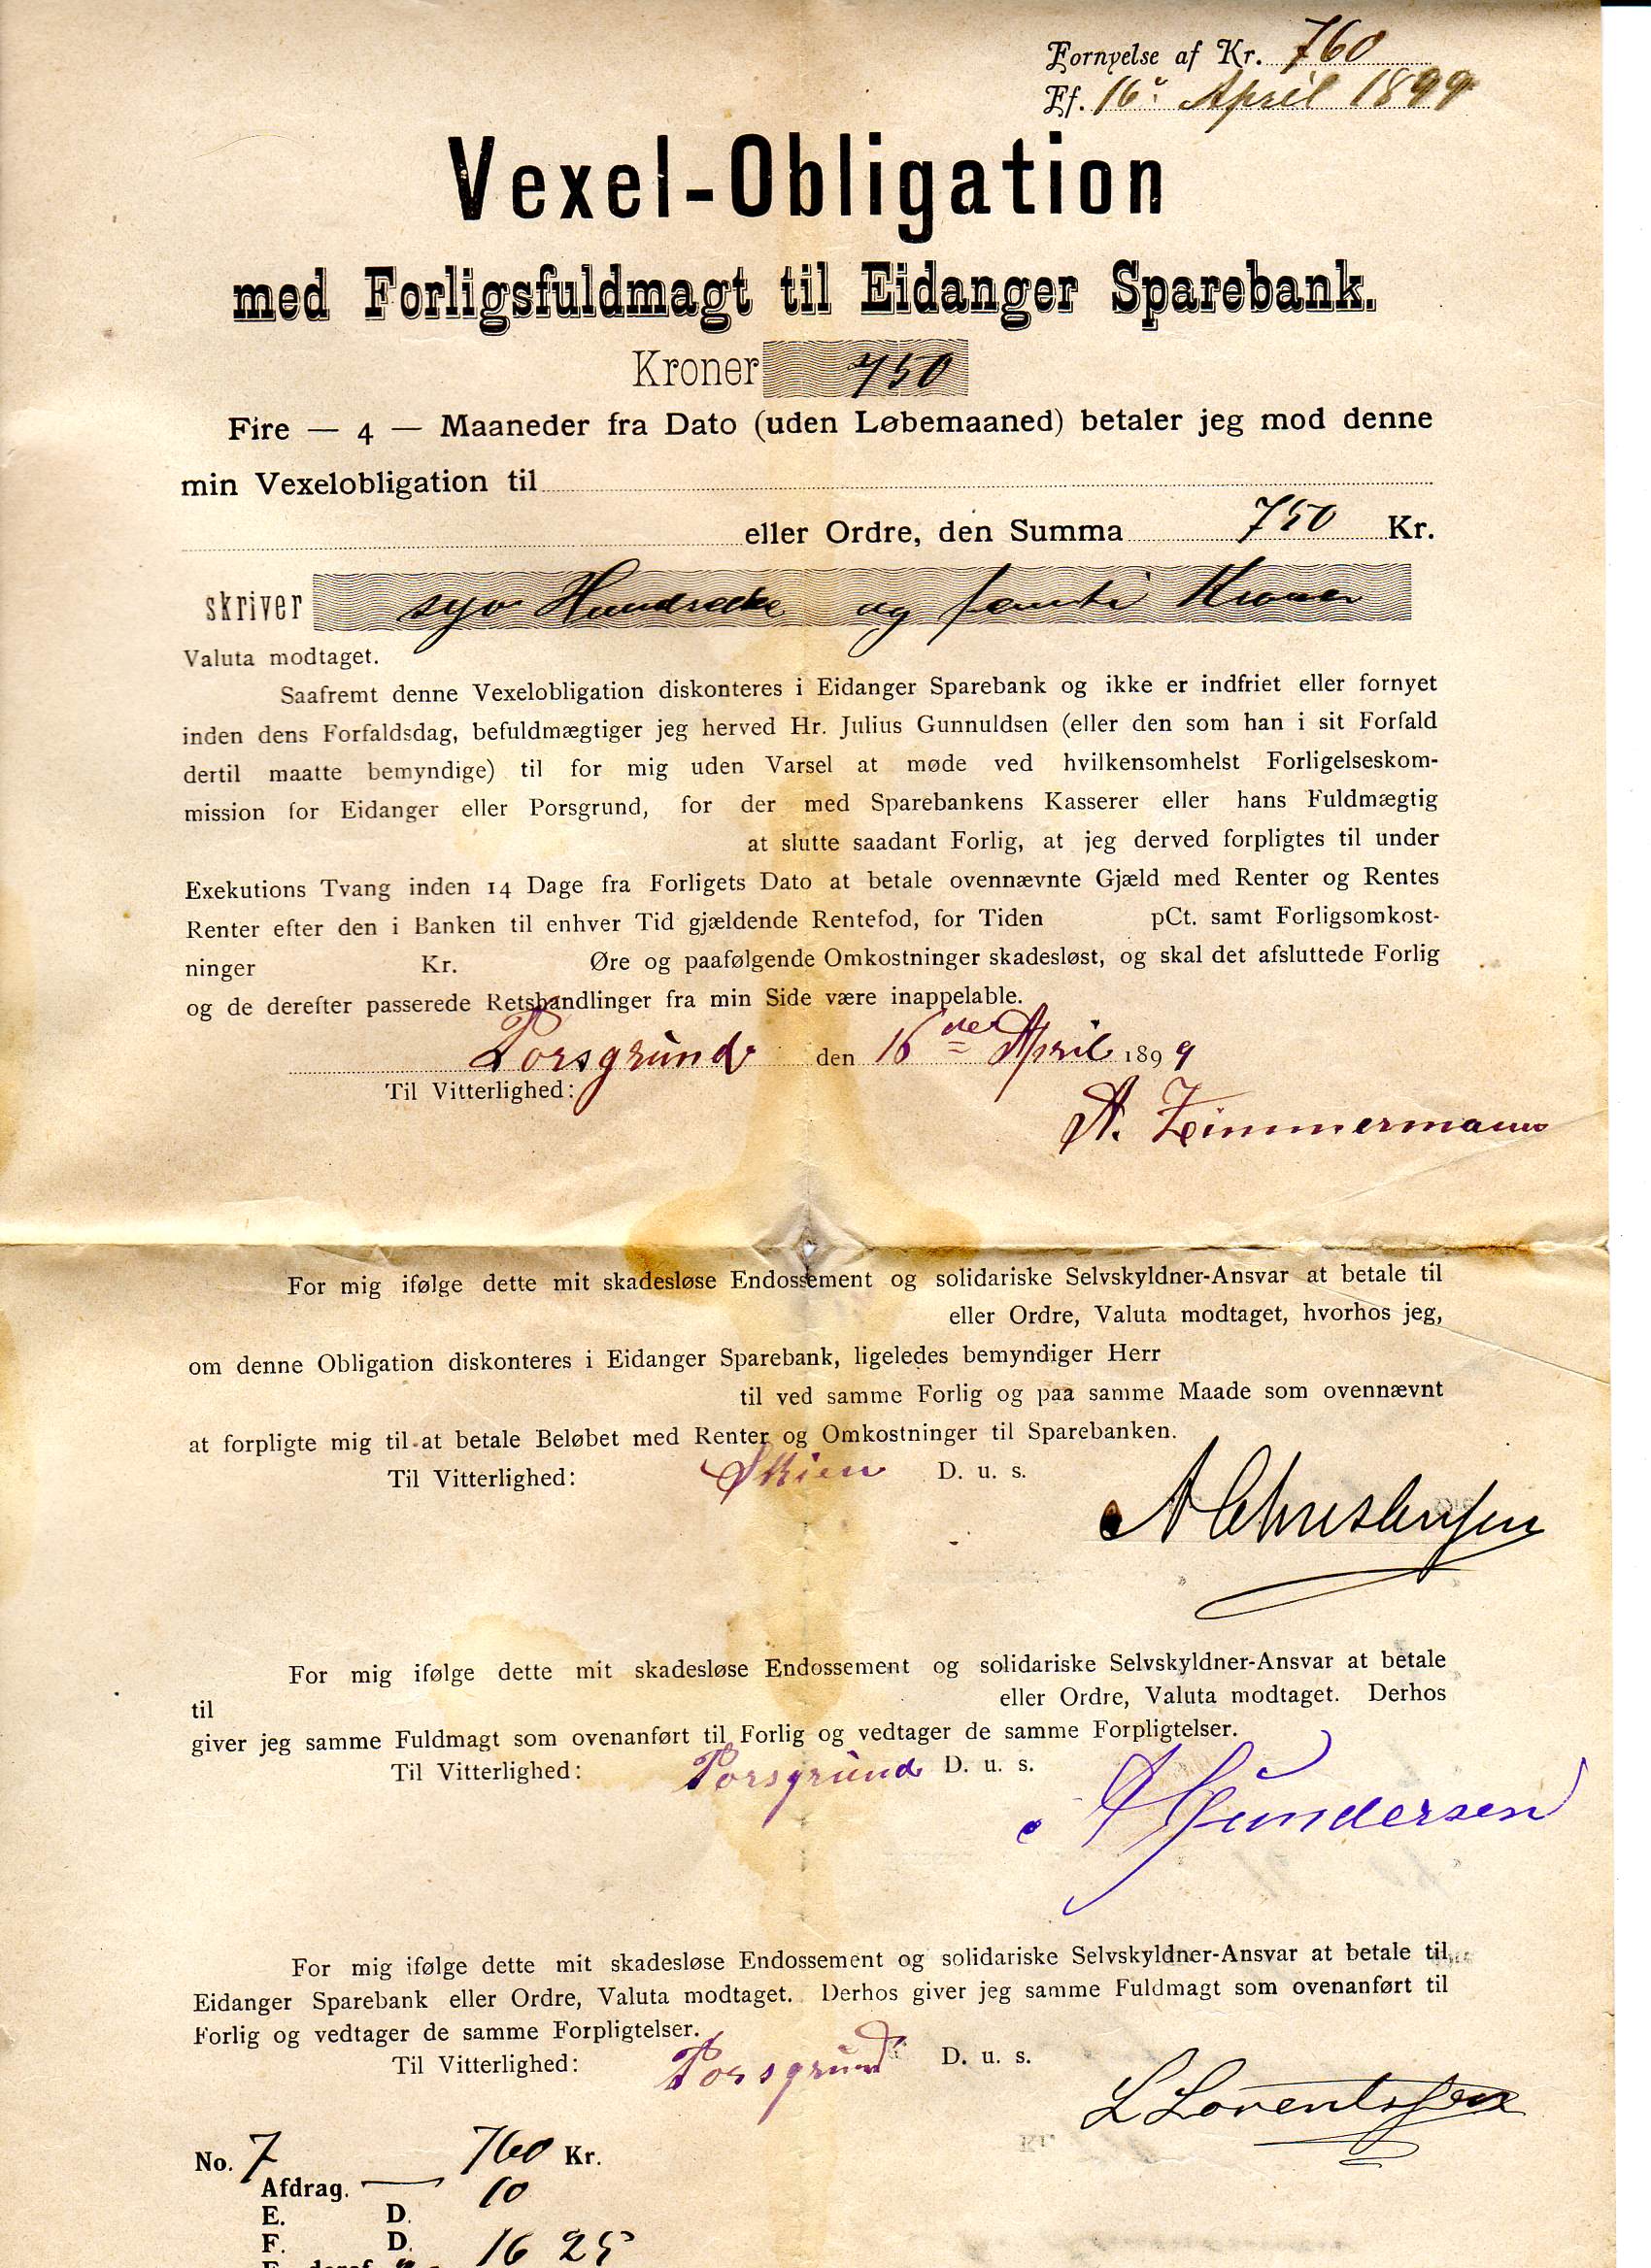 Vexel-Obligation 1899